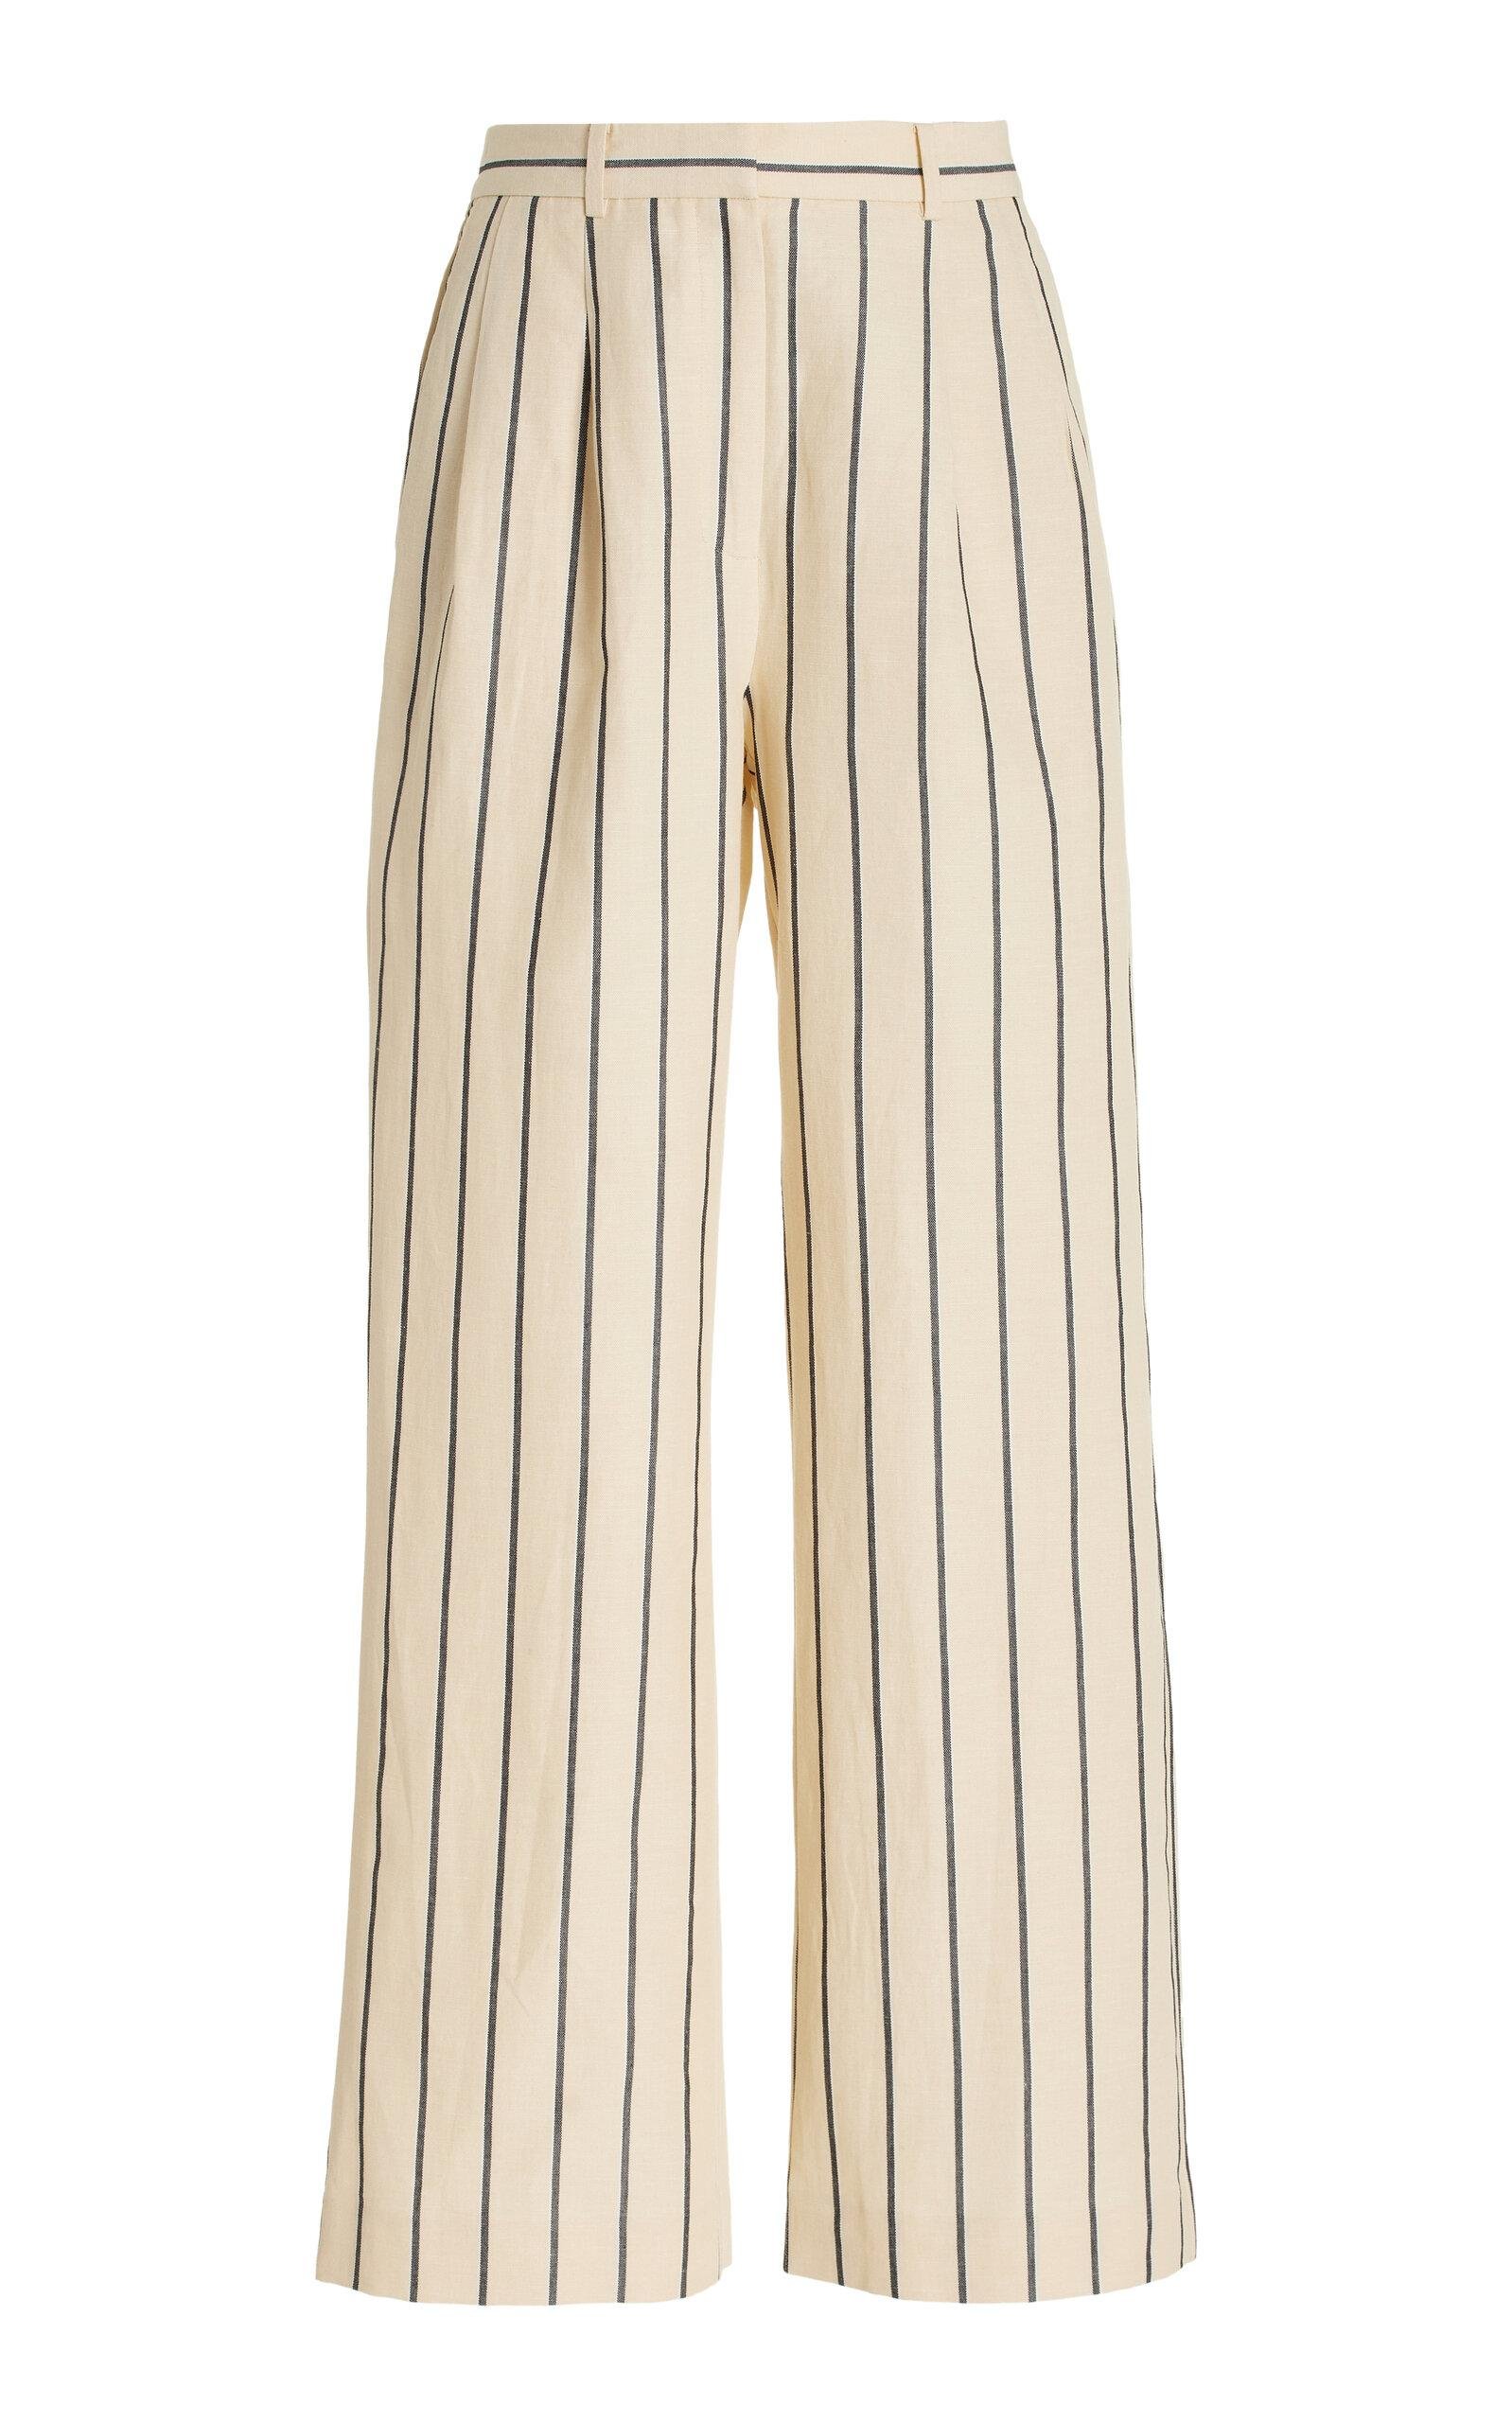 Jenni Kayne - Jones Striped Cotton-Blend Wide-Leg Pants - White - US 0 - Moda Operandi by JENNI KAYNE